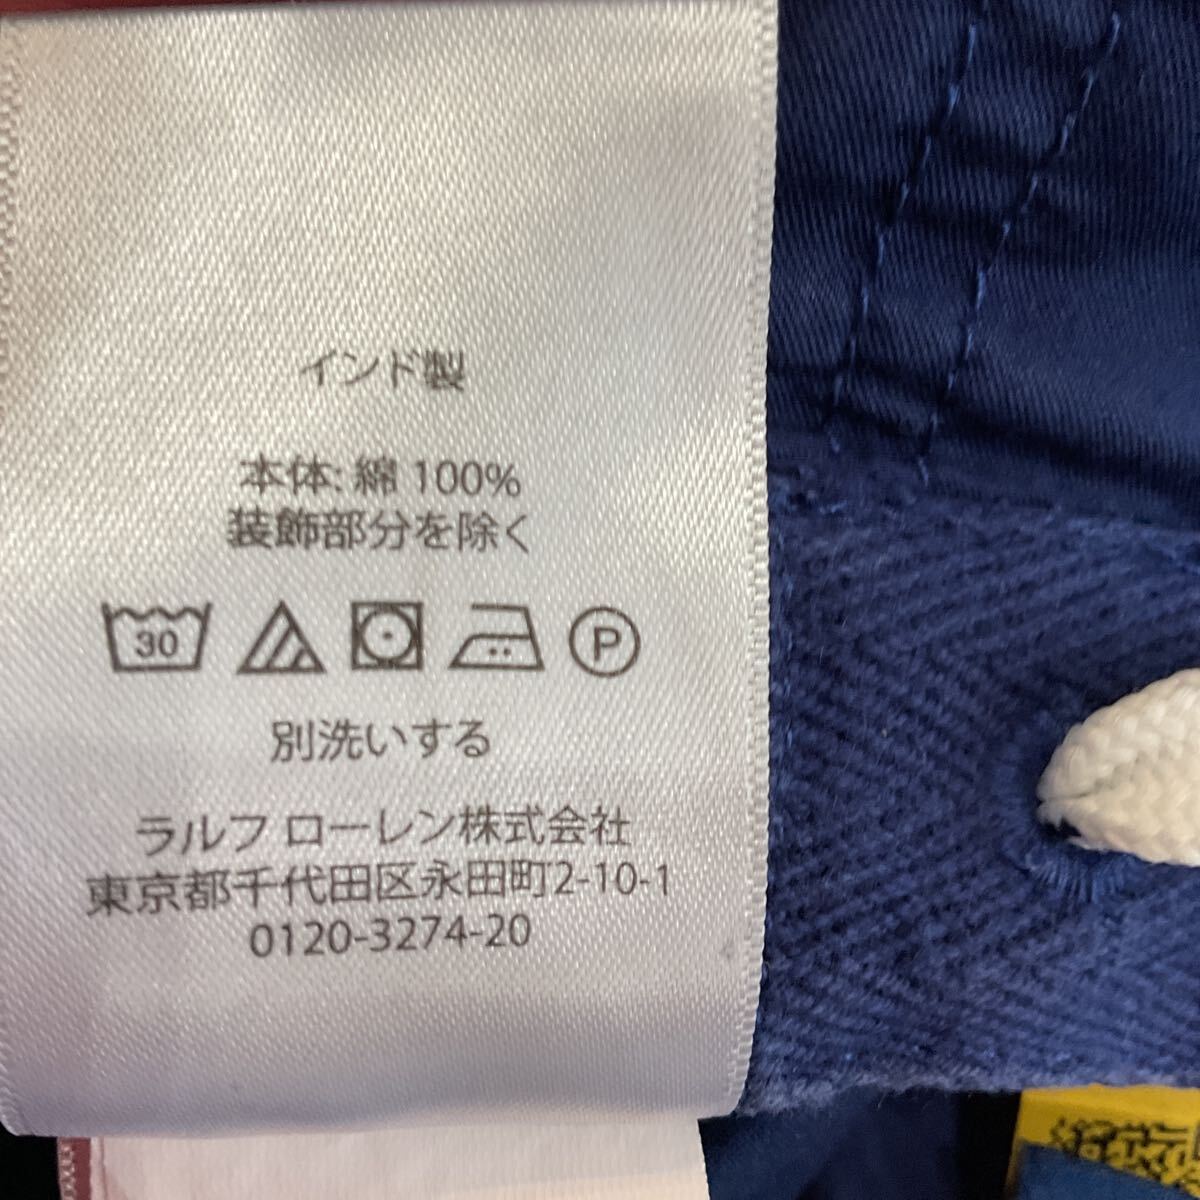  Ralph Lauren шорты размер 130